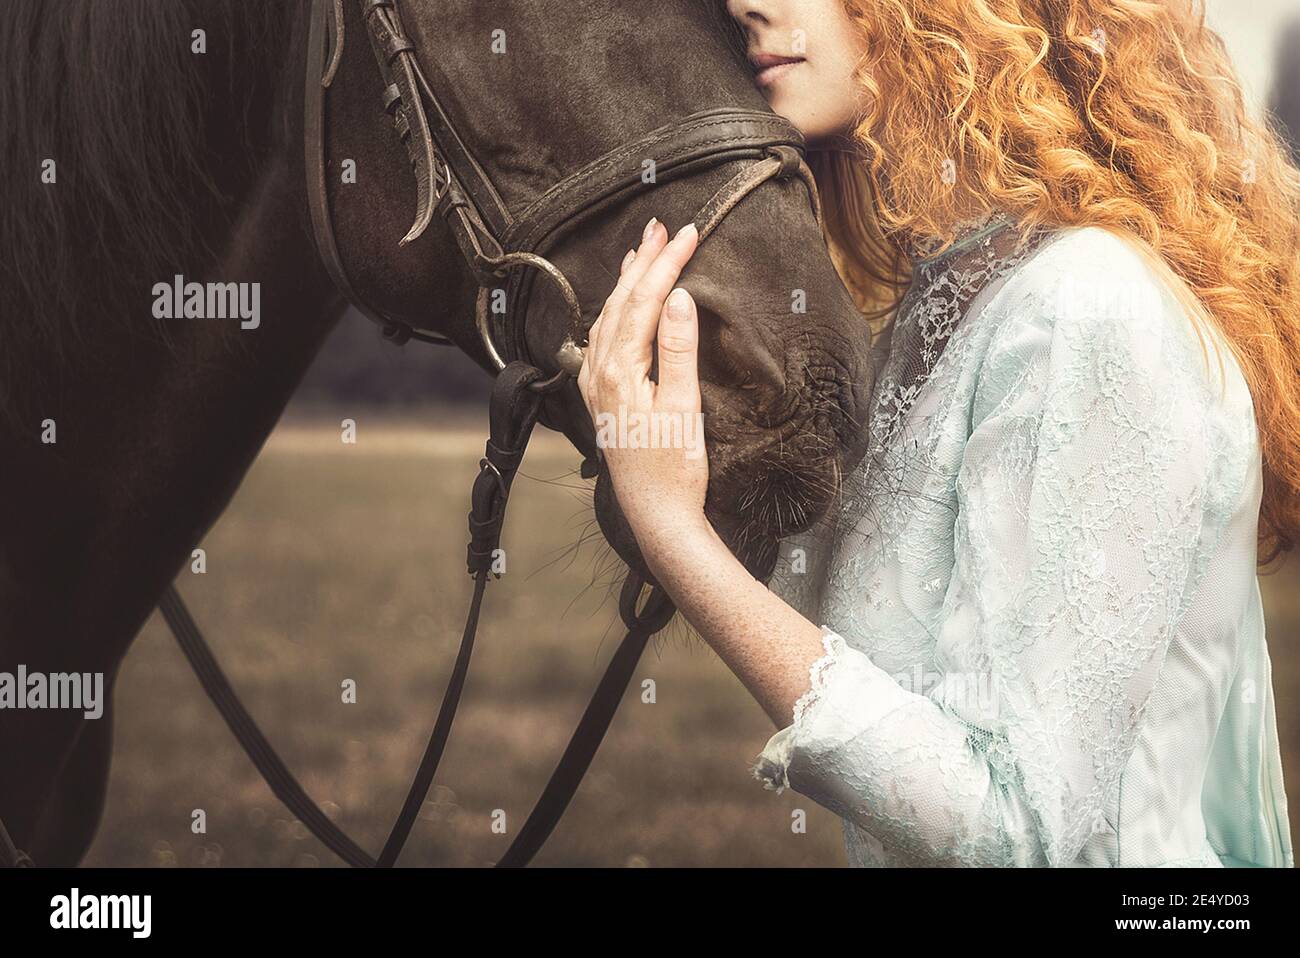 Amore per gli animali. Giovane Donna senza volto vestita in un elegante abito d'epoca, dolcemente coccolando un cavallo, stropicchiando la testa. Foto Stock